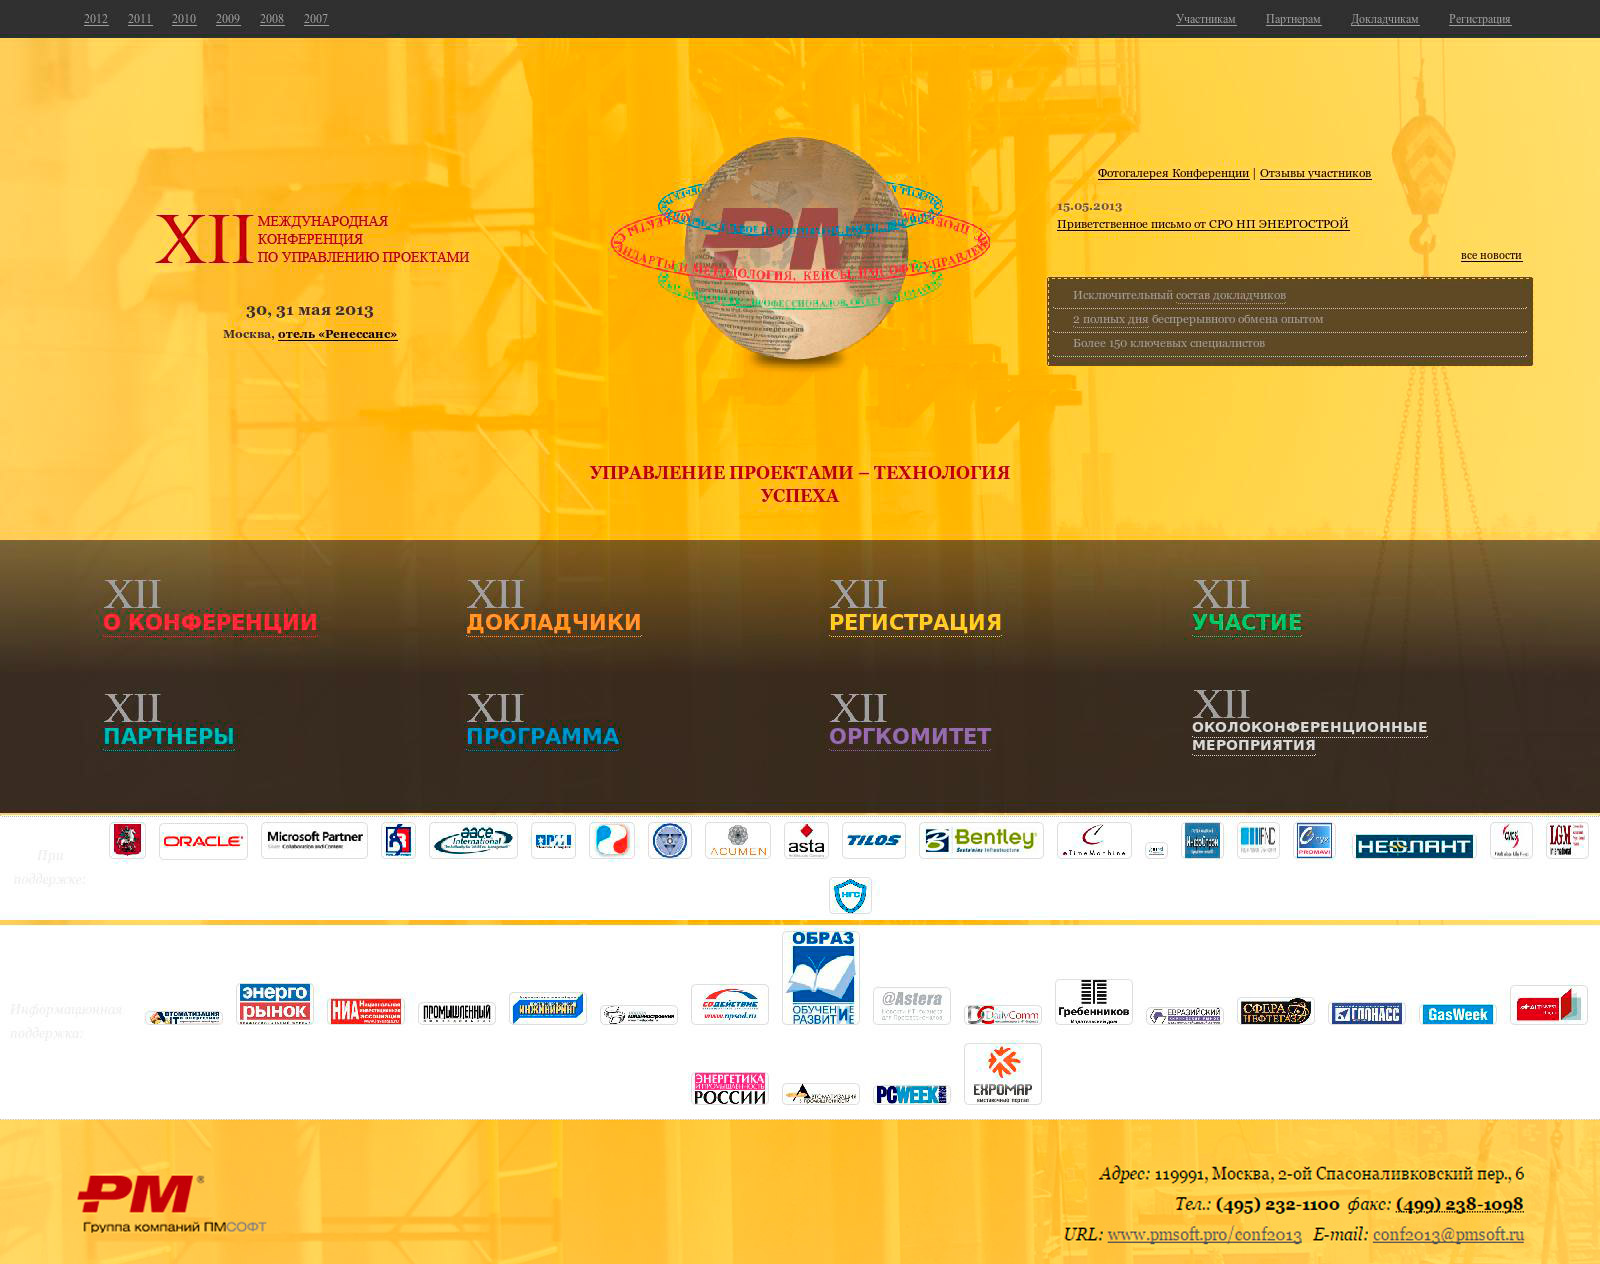 XII Международная конференция по управлению проектми